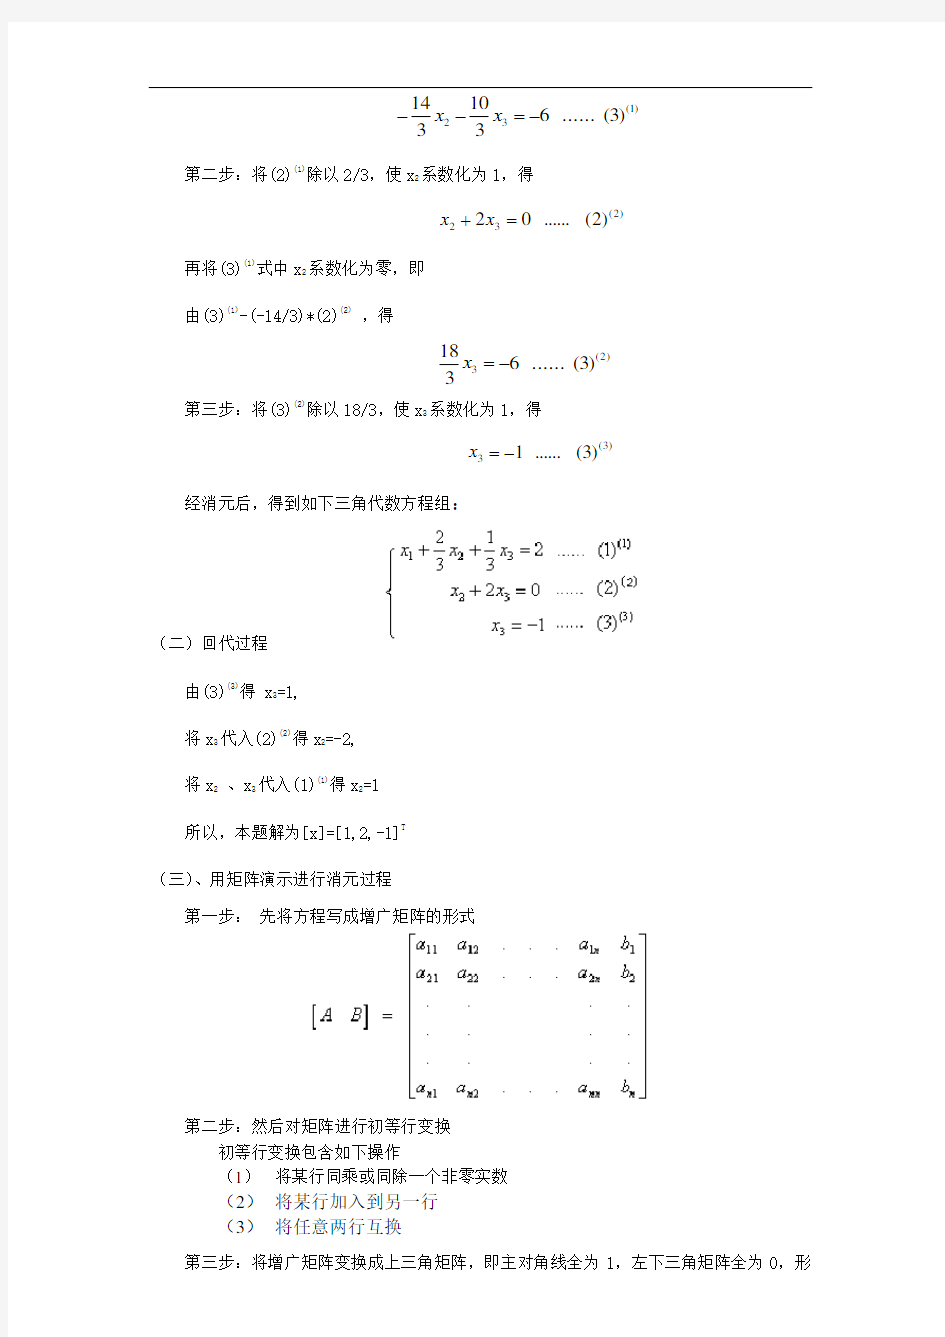 线性方程组的几种求解方法